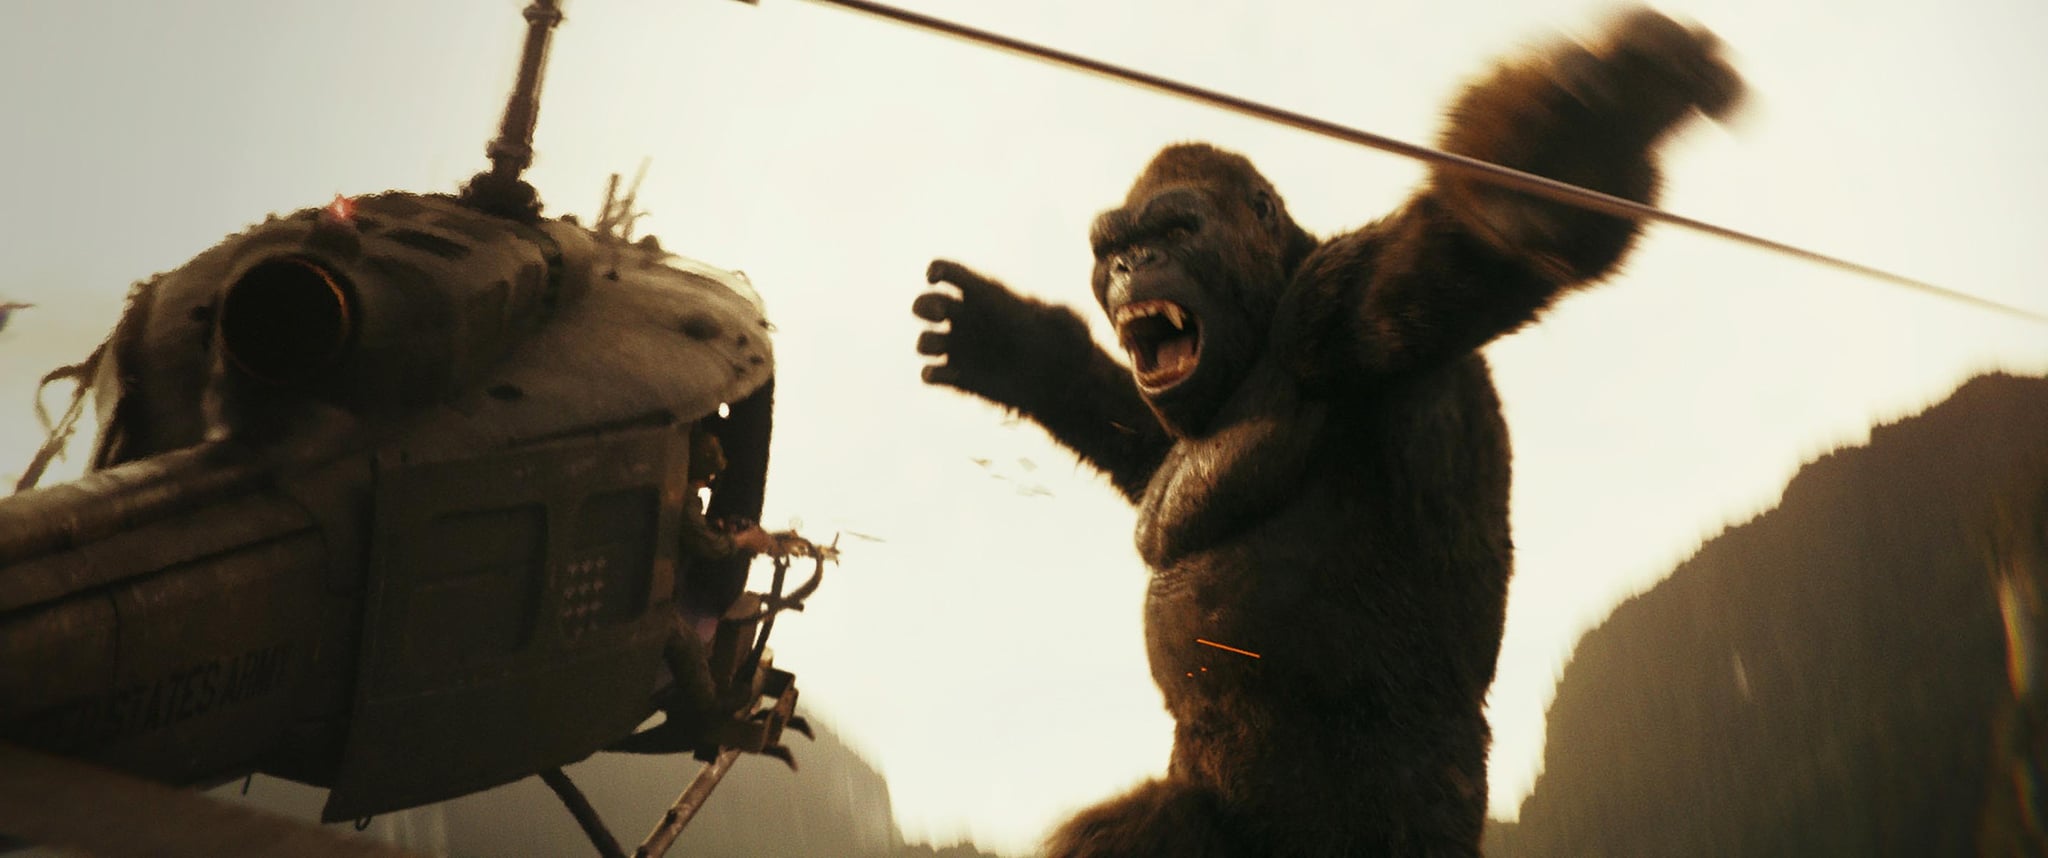 King Kong: in lavorazione una serie TV per Disney+